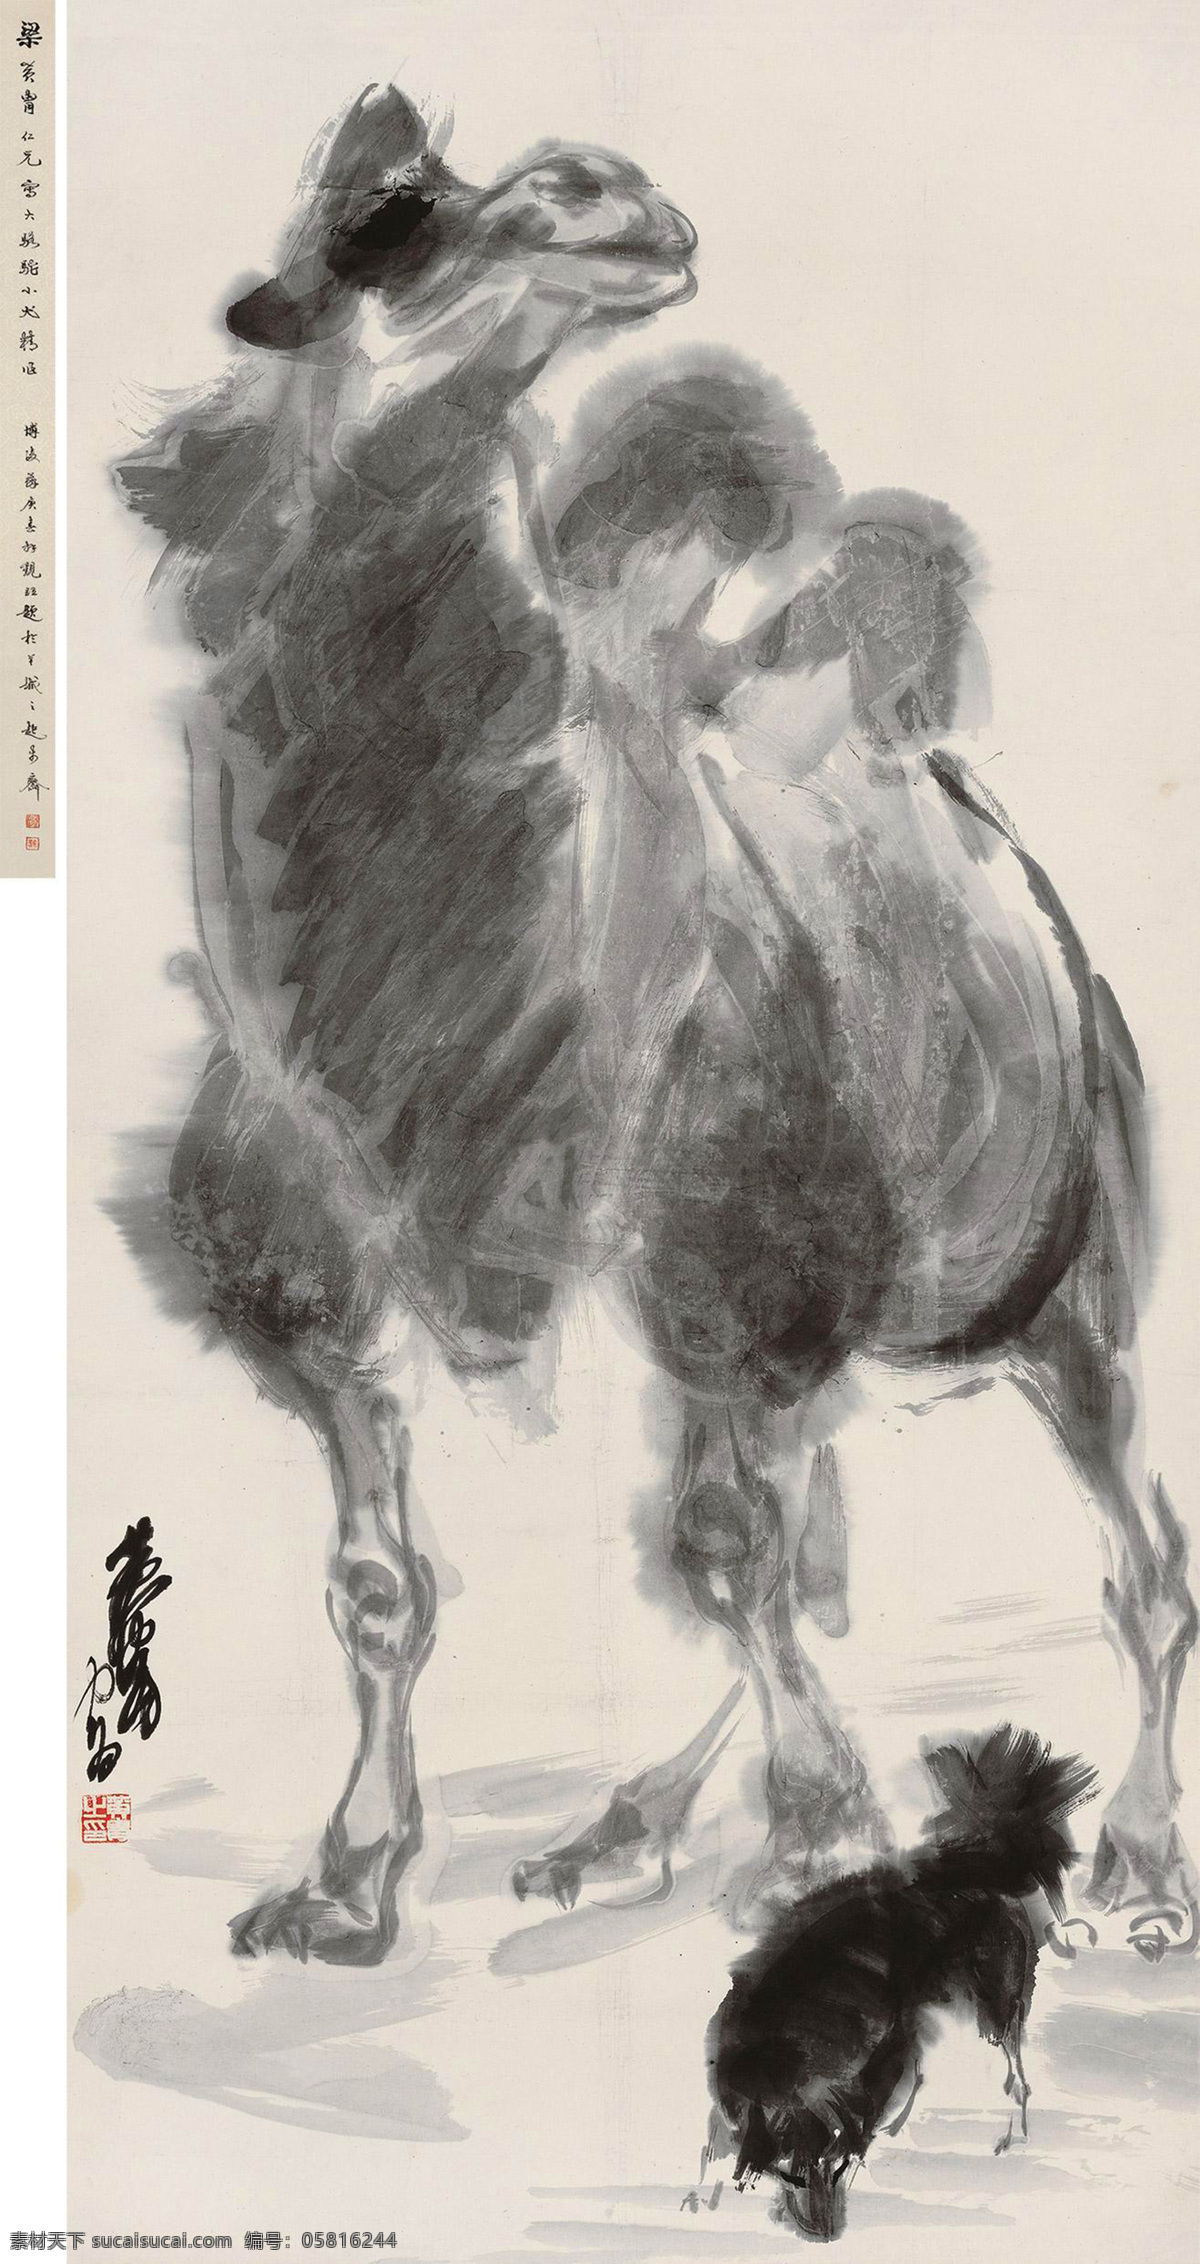 国画 绘画书法 骆驼 水墨画 文化艺术 小狗 中国画 骆驼设计素材 骆驼模板下载 黄胄 沙漠之舟 国画黄胄